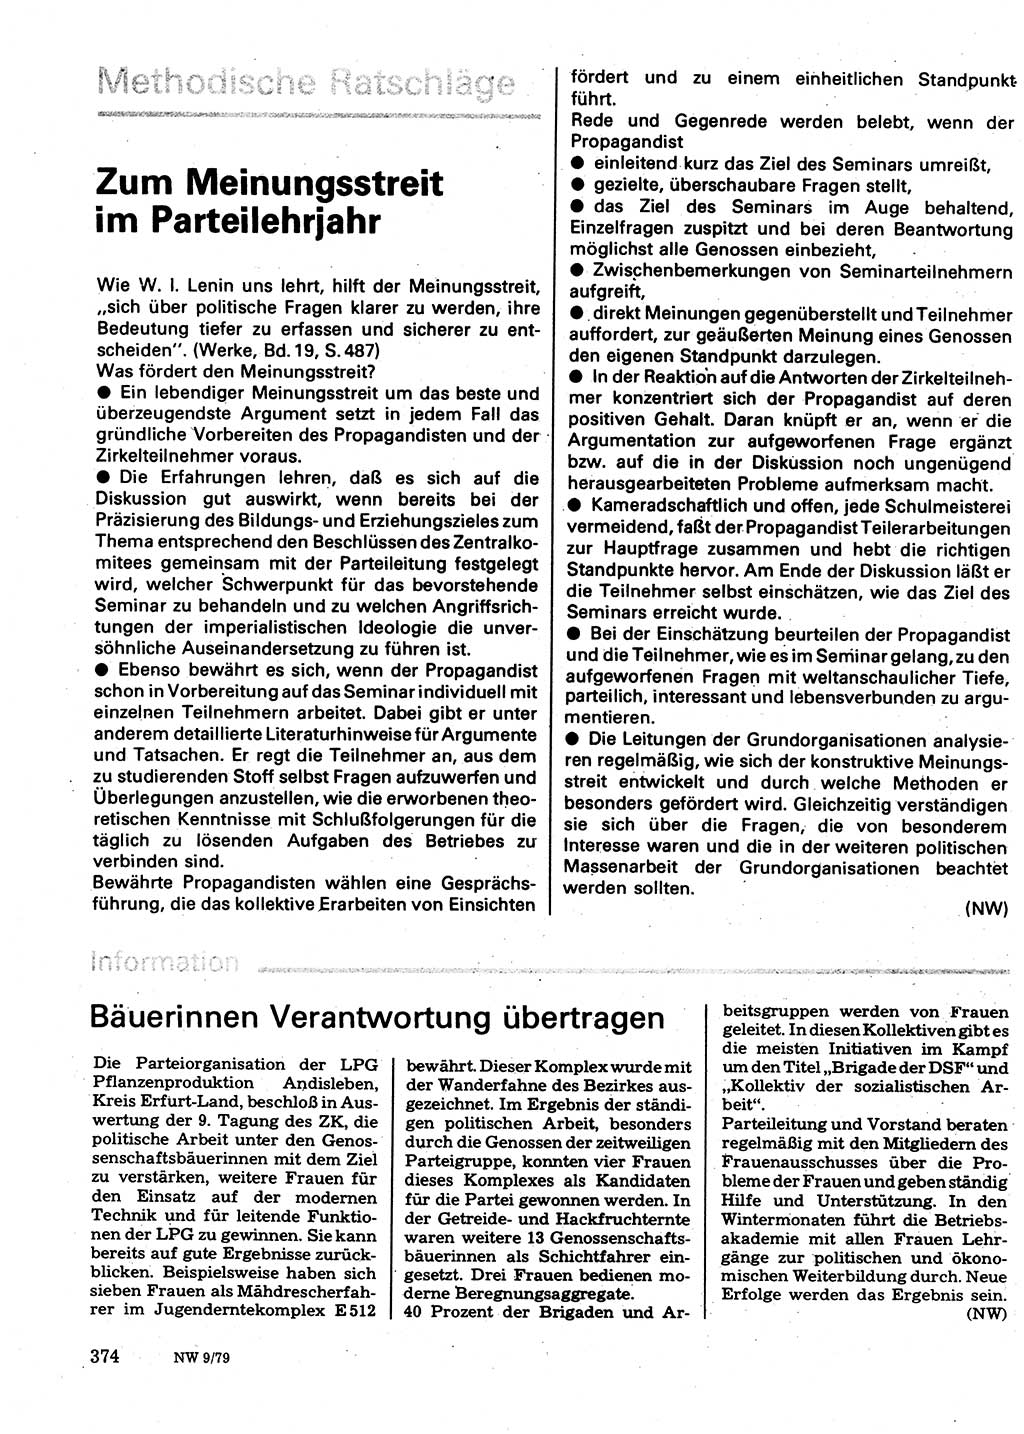 Neuer Weg (NW), Organ des Zentralkomitees (ZK) der SED (Sozialistische Einheitspartei Deutschlands) für Fragen des Parteilebens, 34. Jahrgang [Deutsche Demokratische Republik (DDR)] 1979, Seite 374 (NW ZK SED DDR 1979, S. 374)